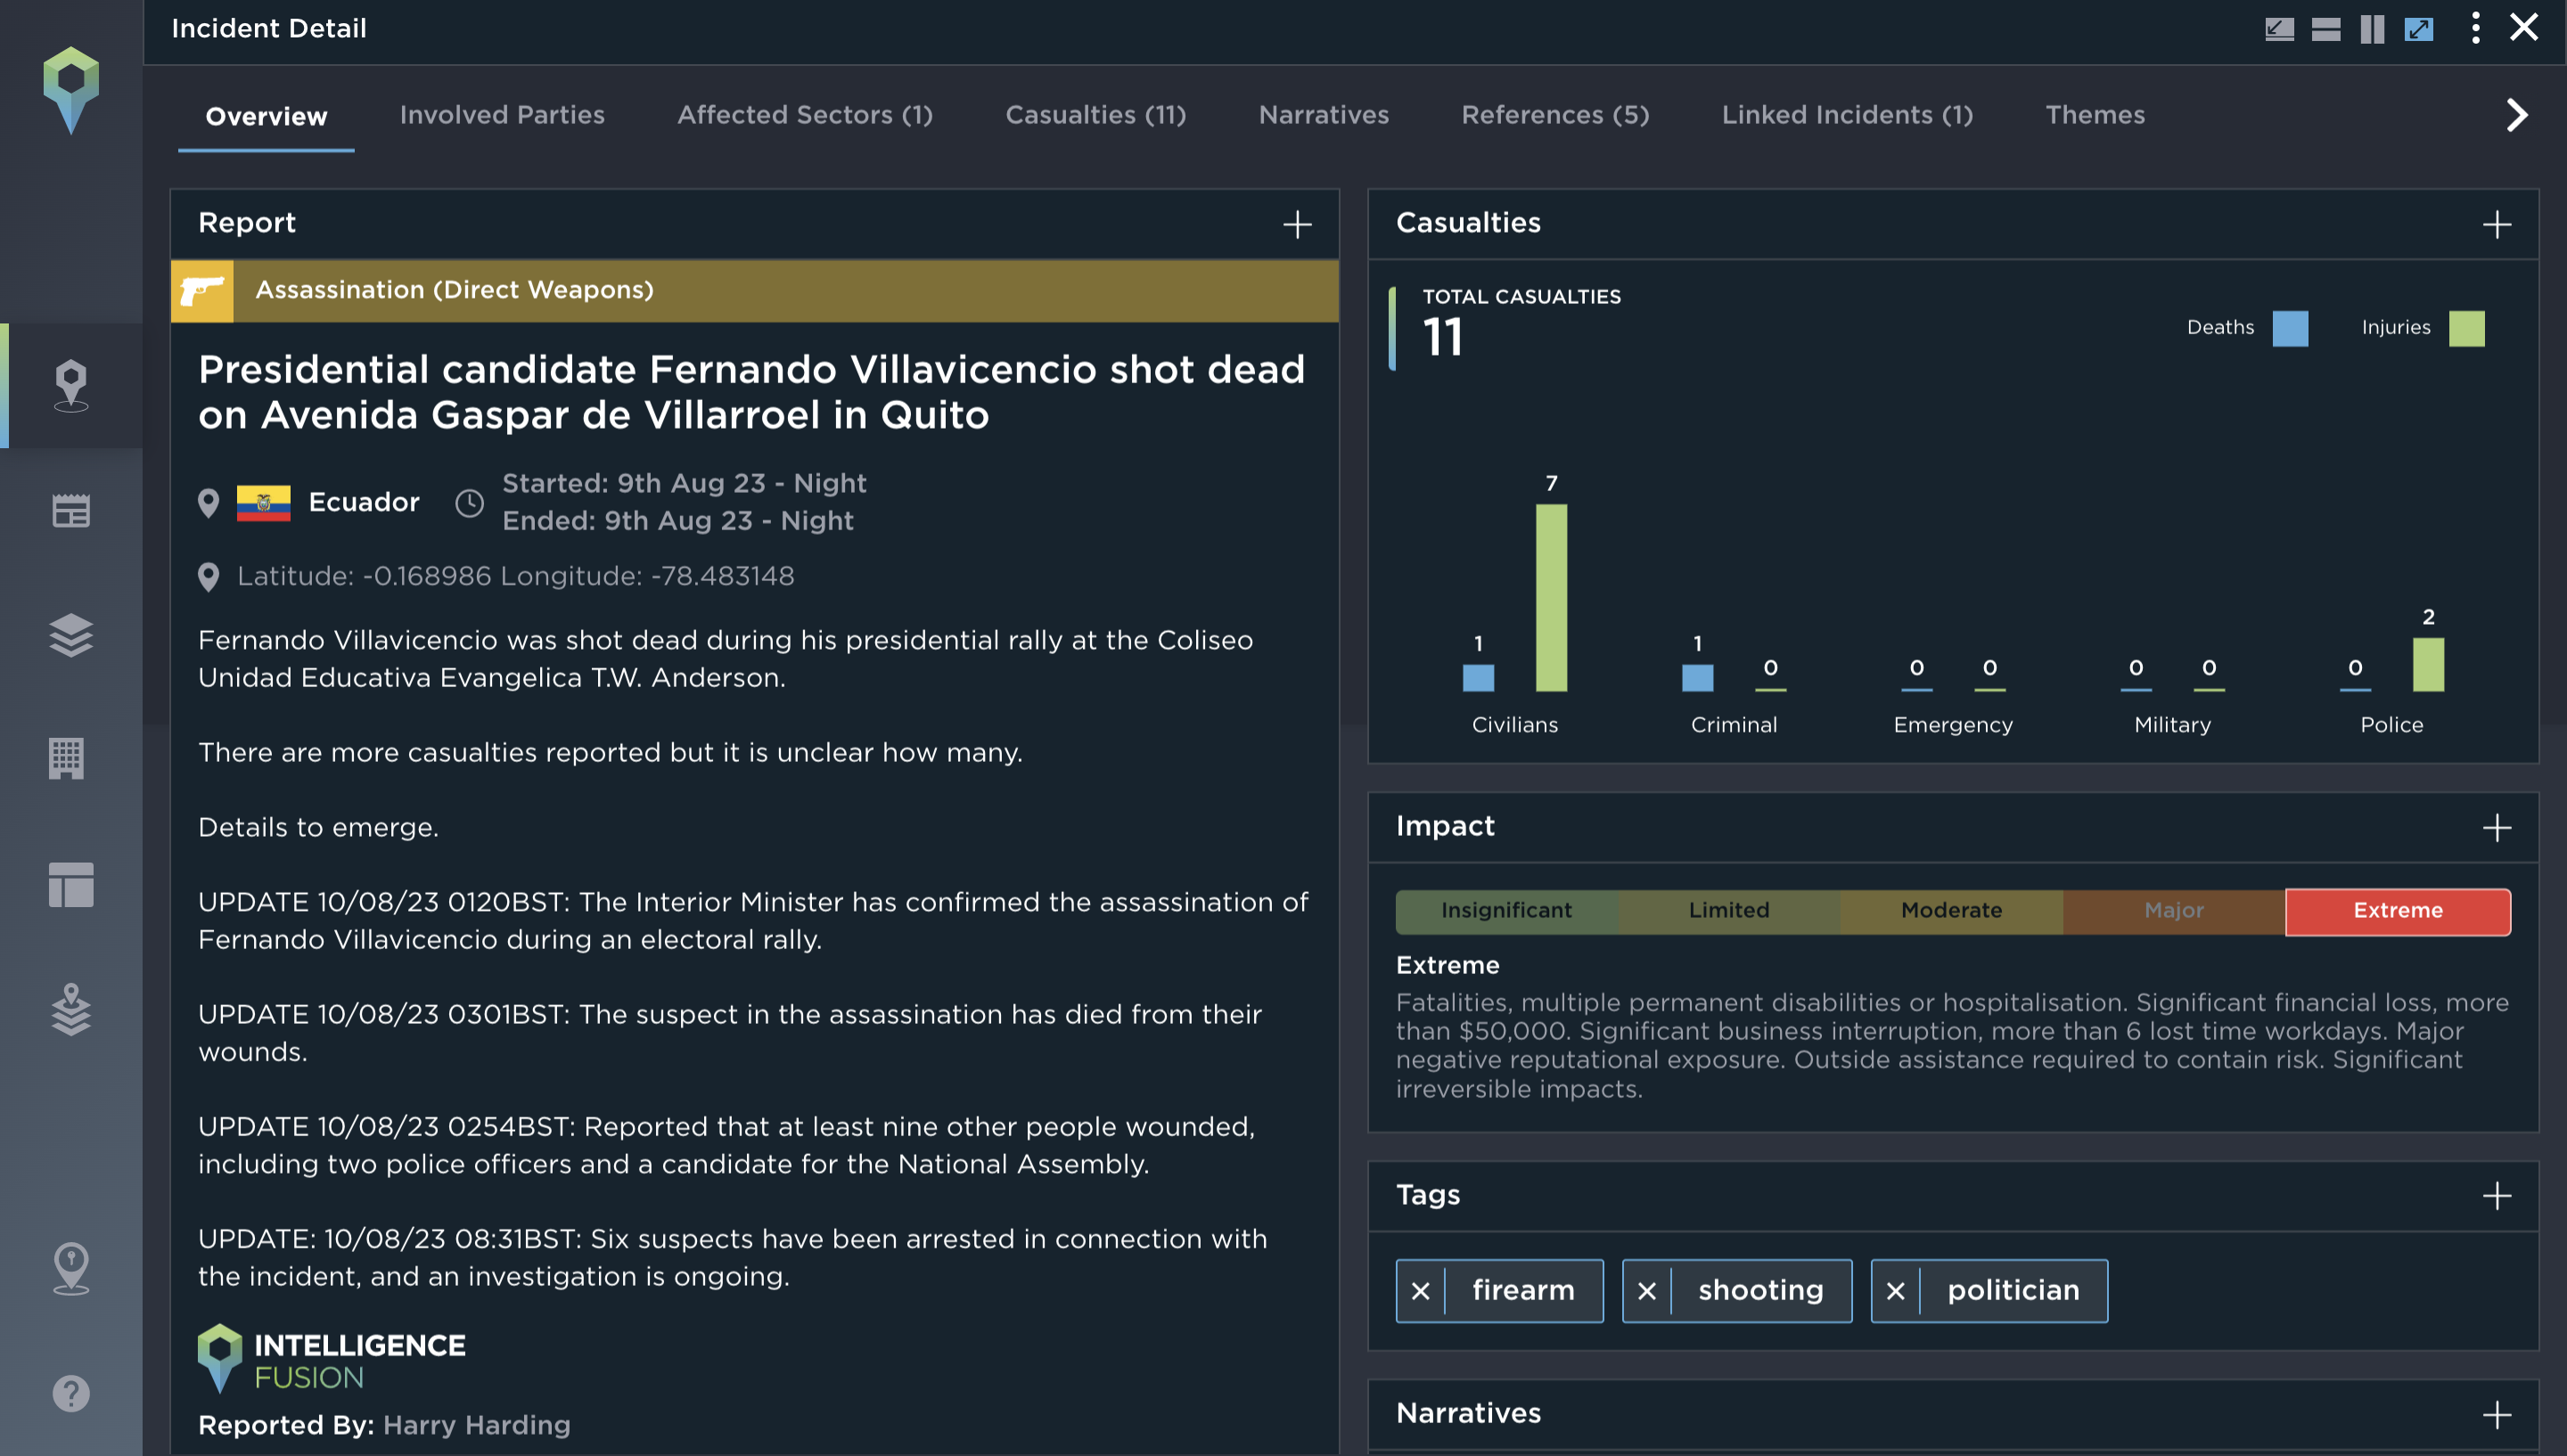 Assassination of Fernando Villavicencio